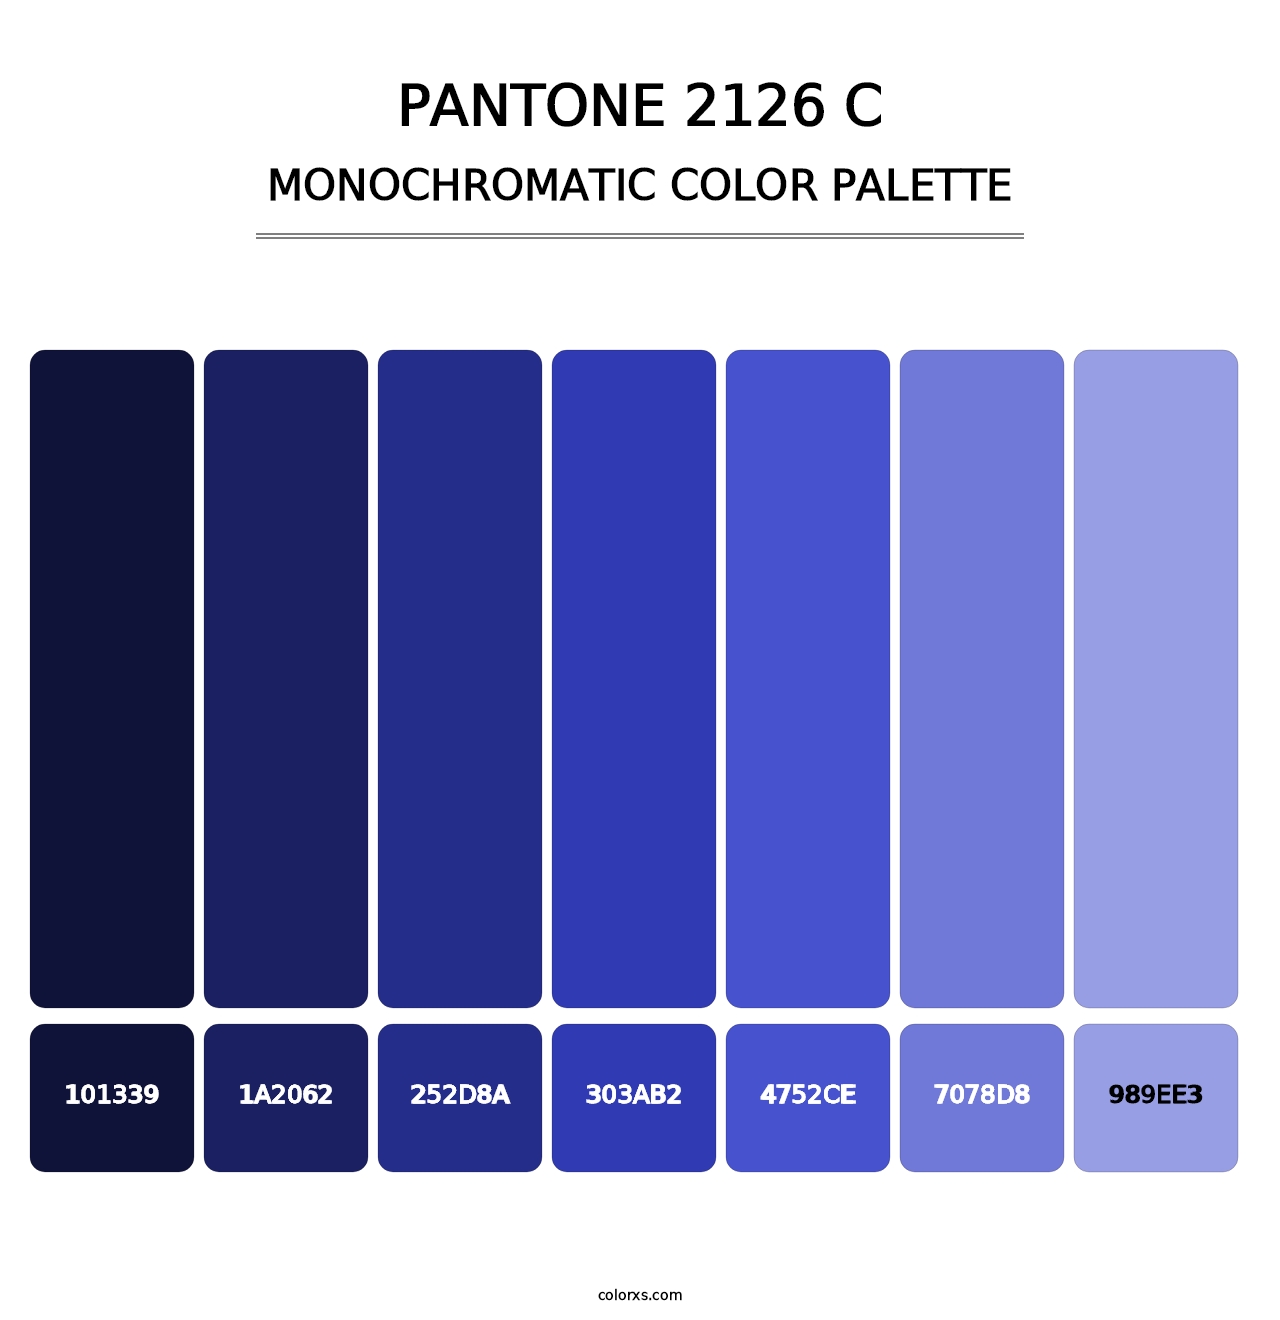 PANTONE 2126 C - Monochromatic Color Palette